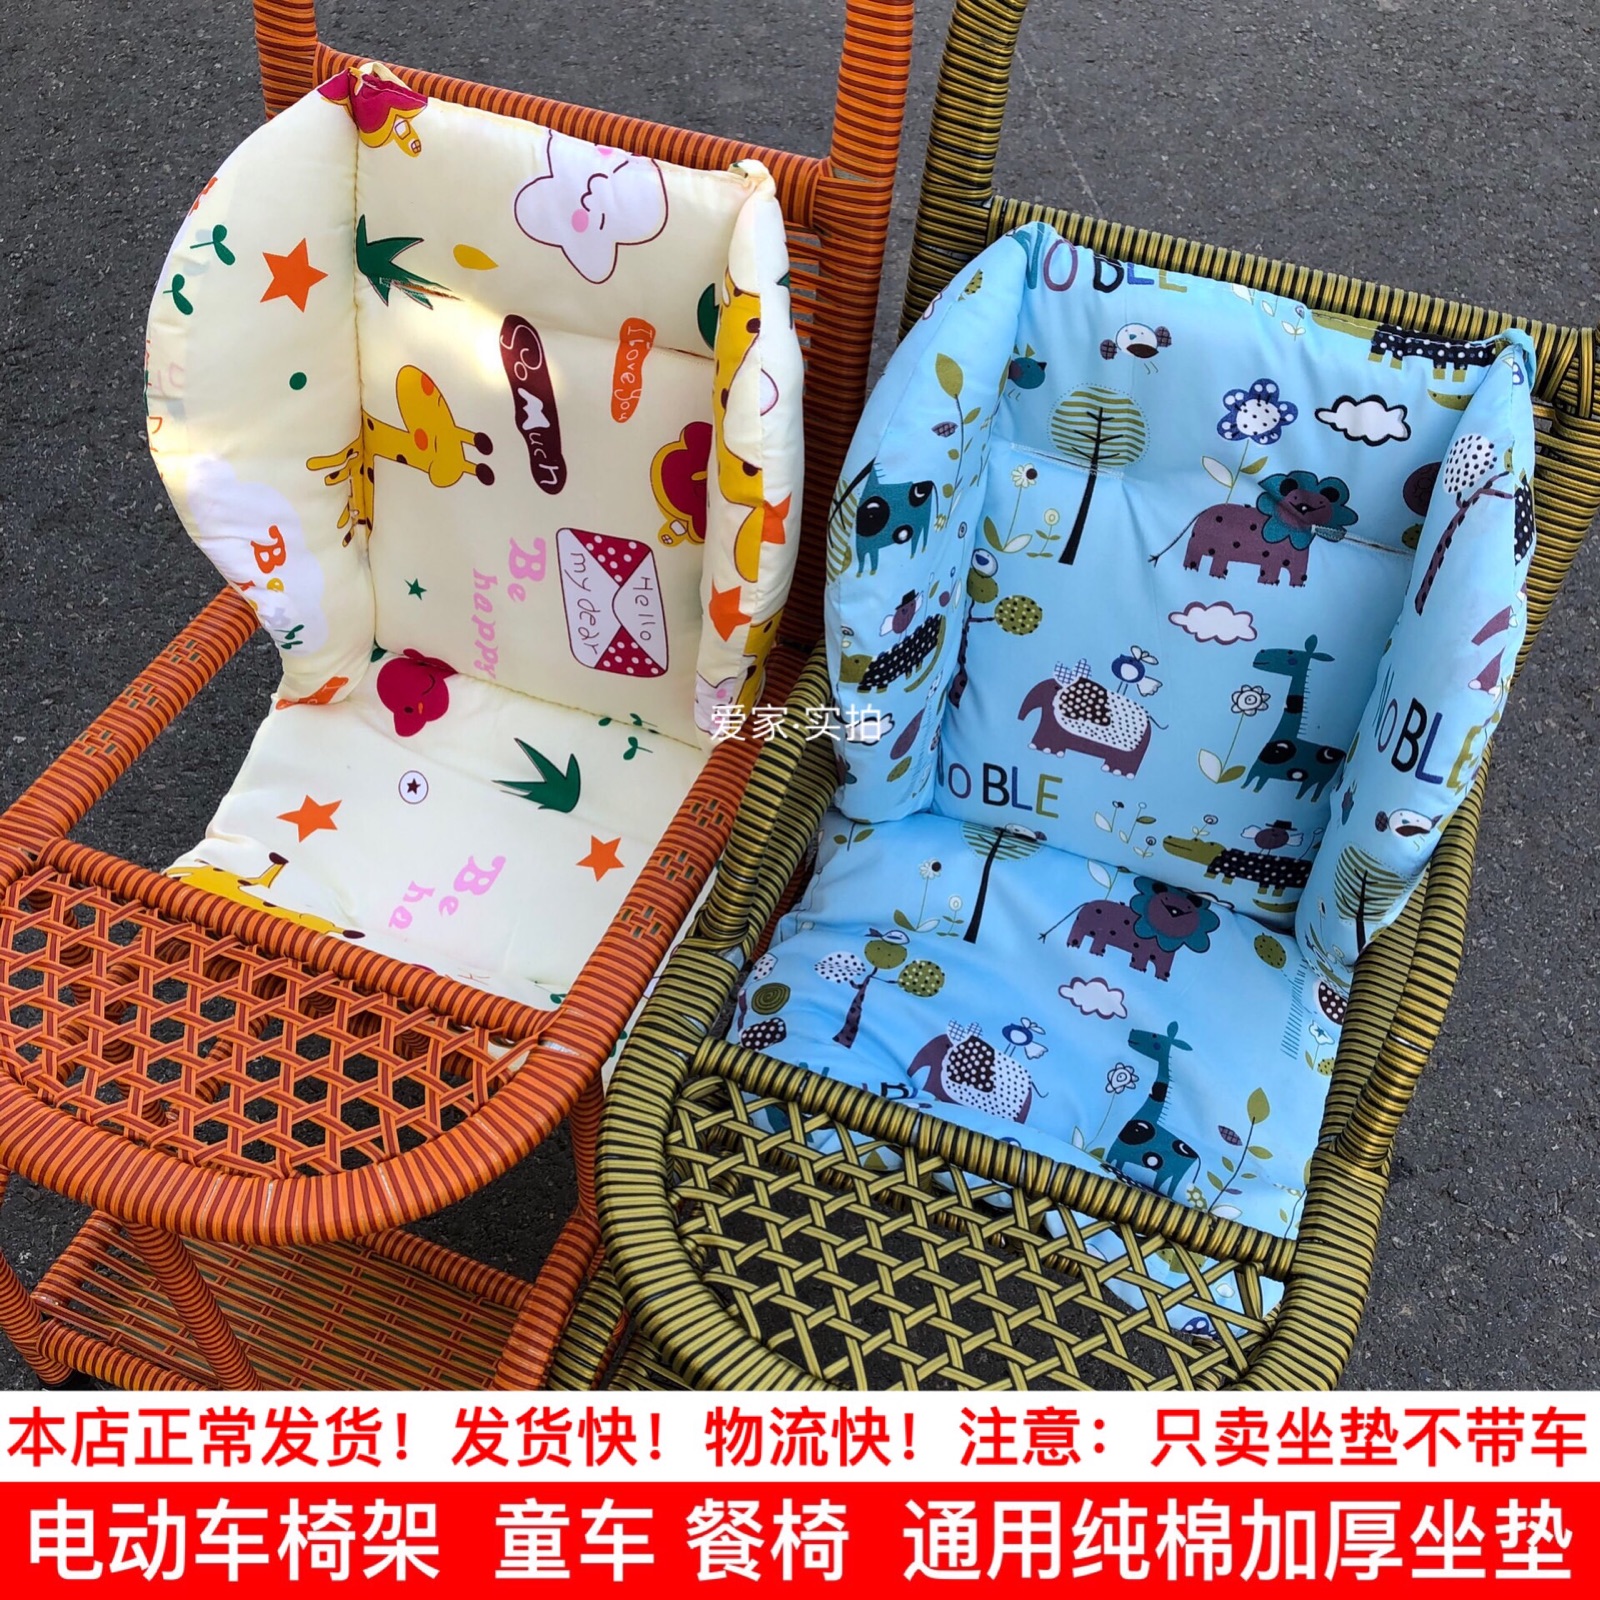 婴儿推车坐垫伞车冰丝棉垫宝宝藤椅凉席童车棉垫幼儿餐椅垫子通用